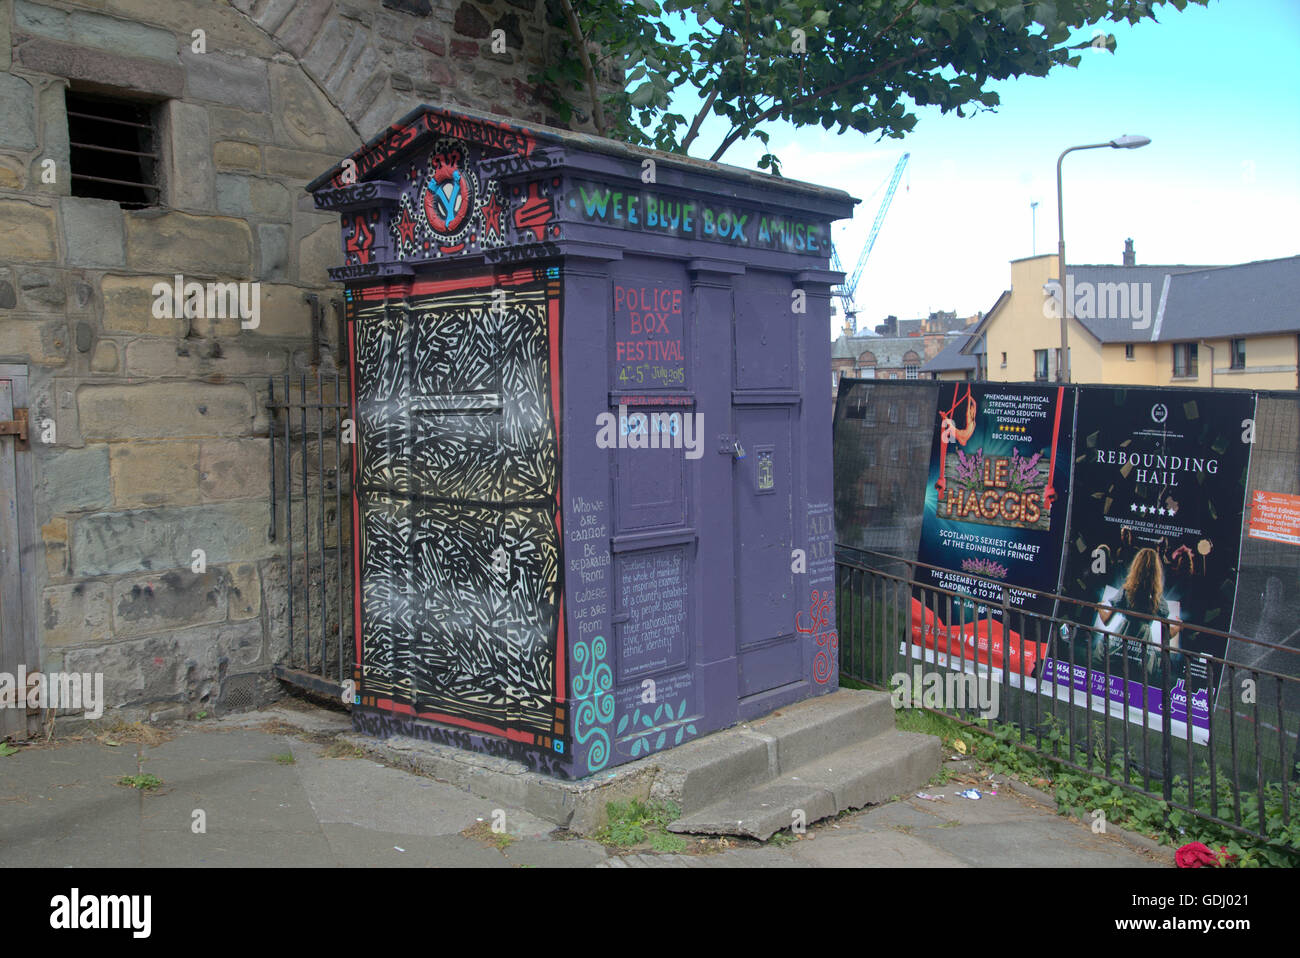 Convertito polizia info box art con inserzioni dall'Edinburgh Festival Fringe vergine sponsorizzato street festival 2015, Edimburgo Foto Stock